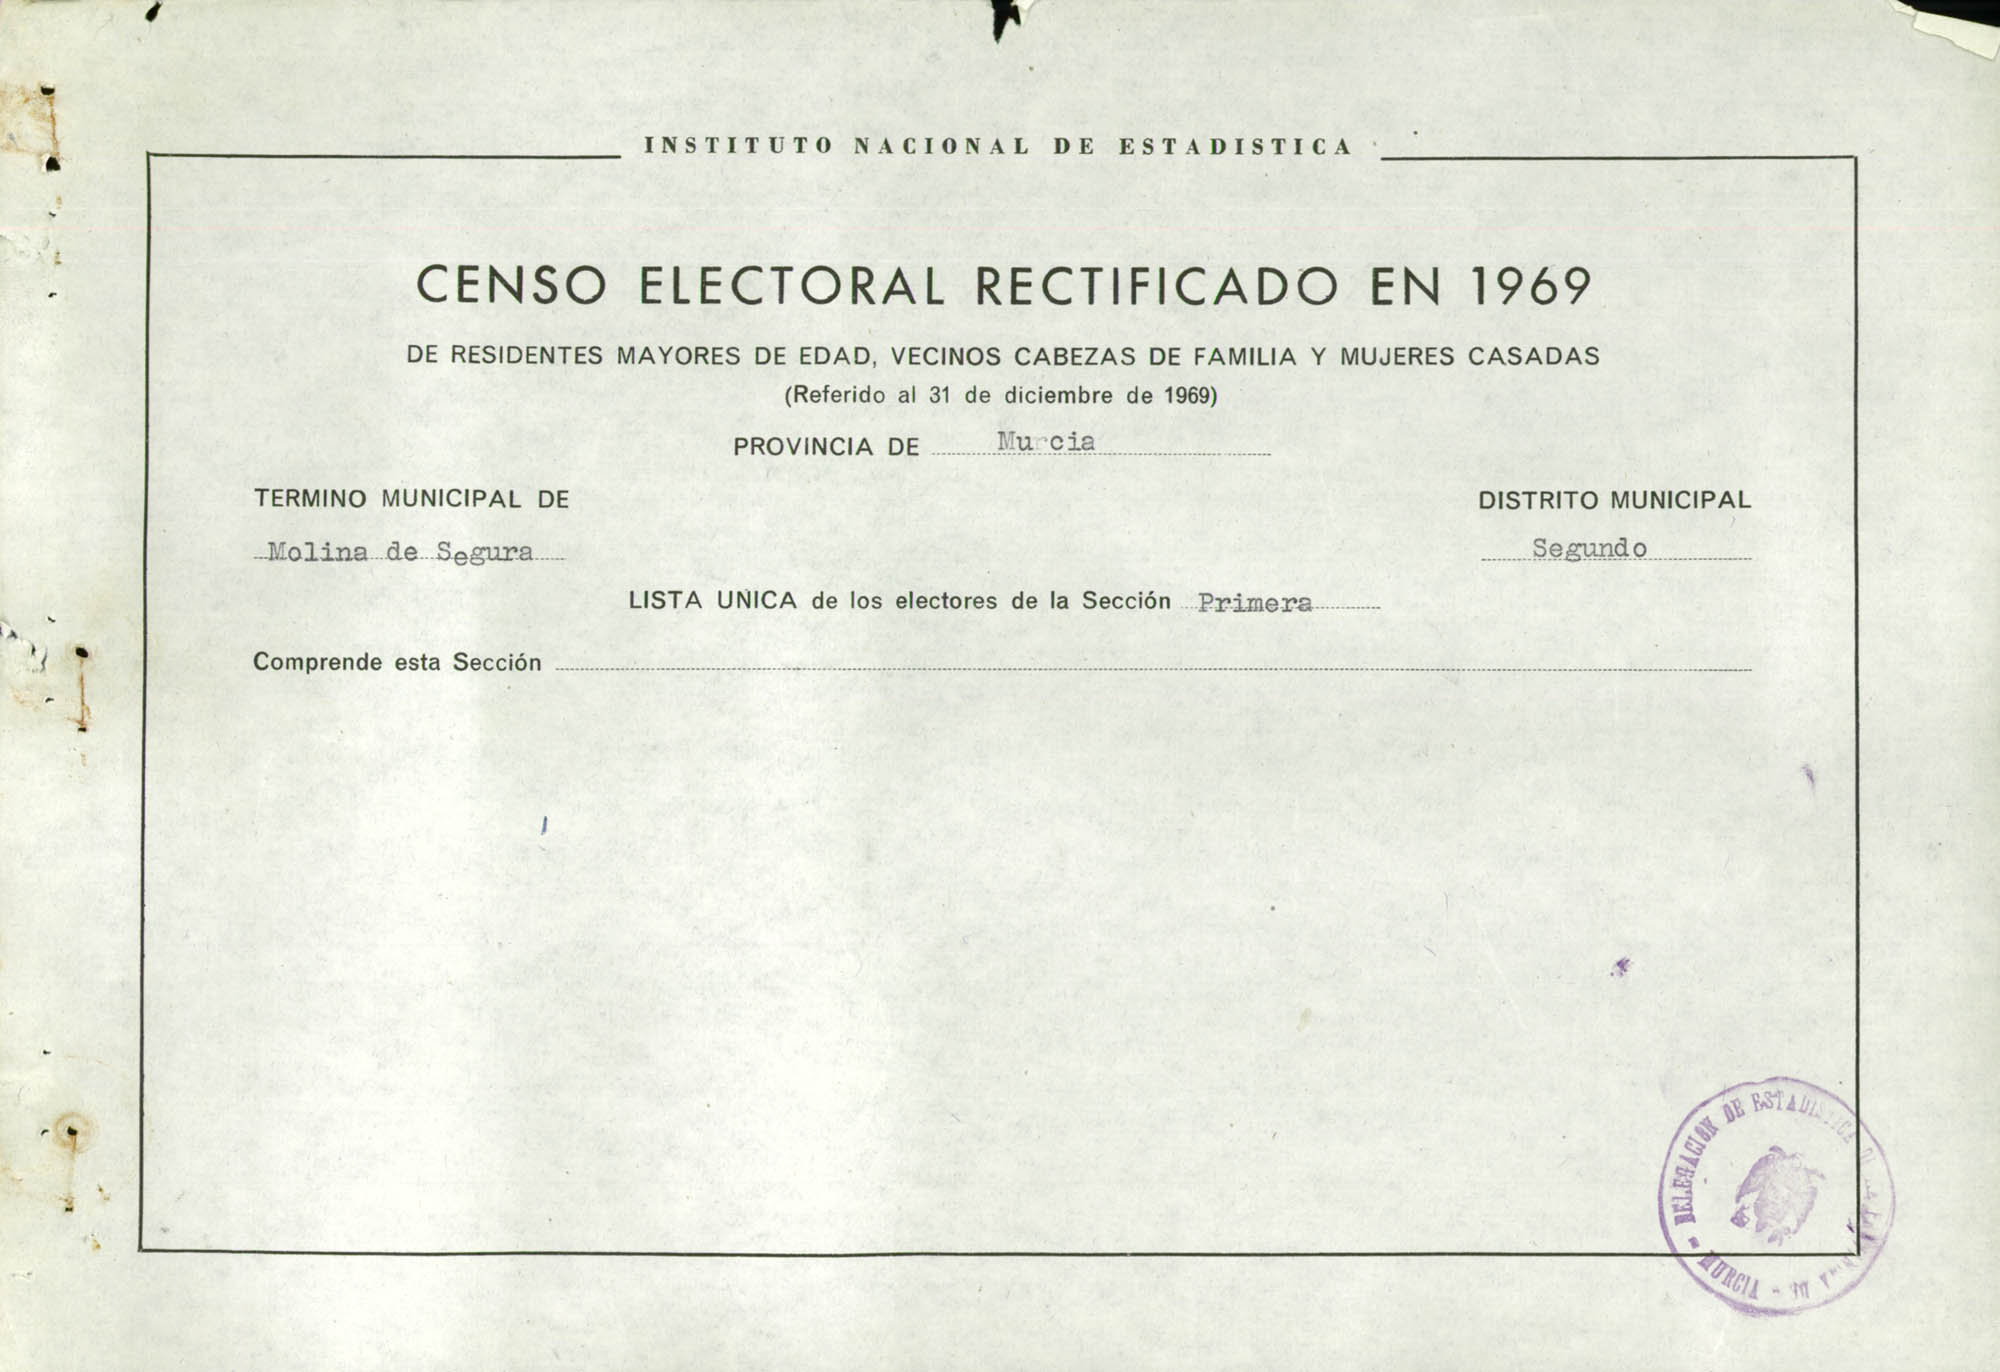 Censo electoral rectificado en 1969: listas definitivas de Molina de Segura, Distrito 2º, sección 1ª.